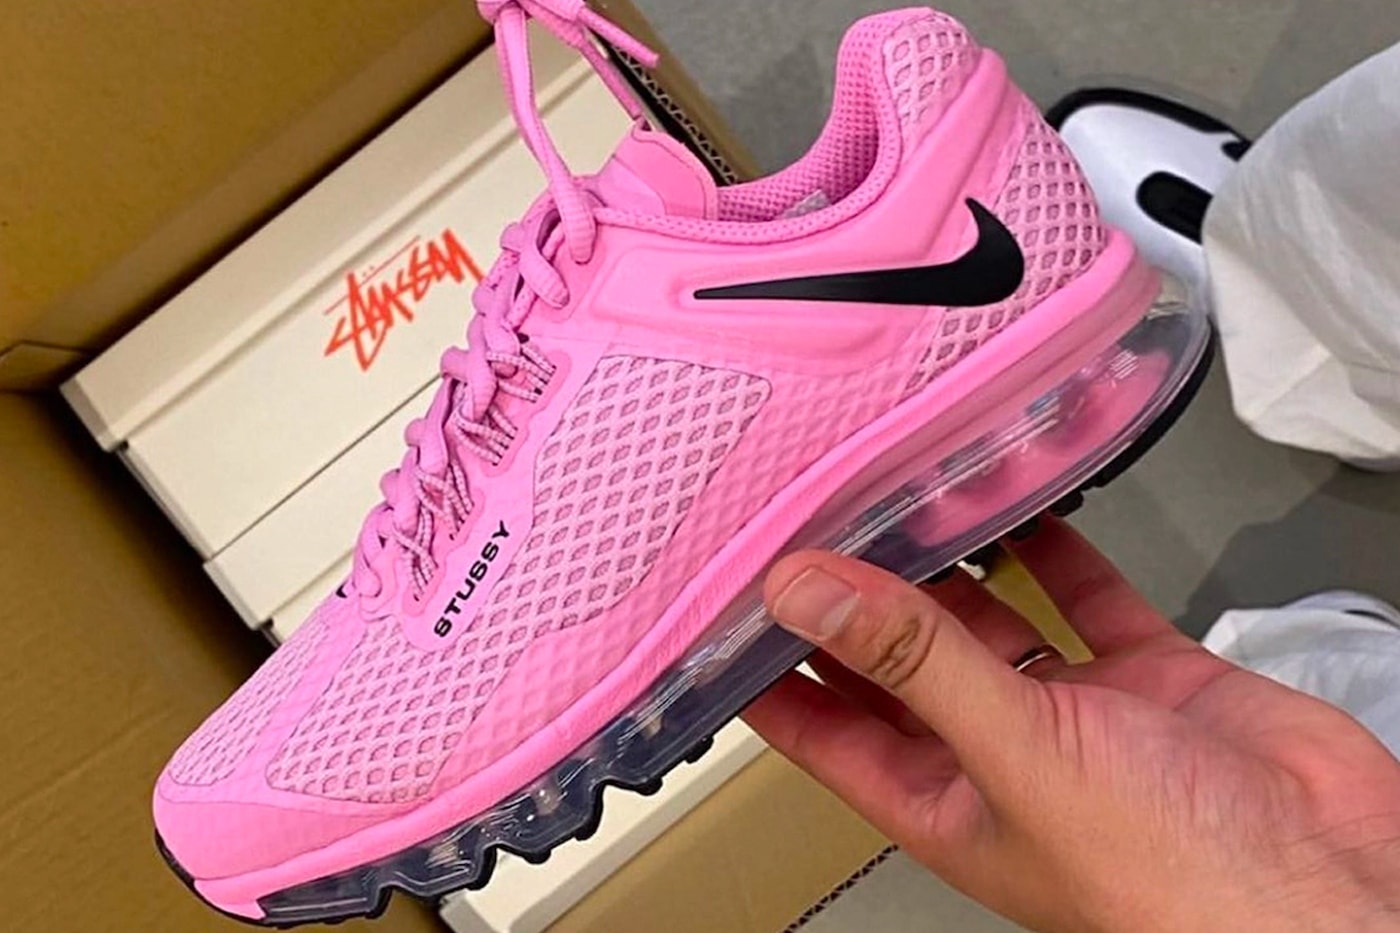 ステューシー x ナイキの最新コラボ エアマックス 2015 に別カラーの存在が浮上 Stüssy Nike Air Max 2015 Black Pink First Look Release Info Date Buy Price 